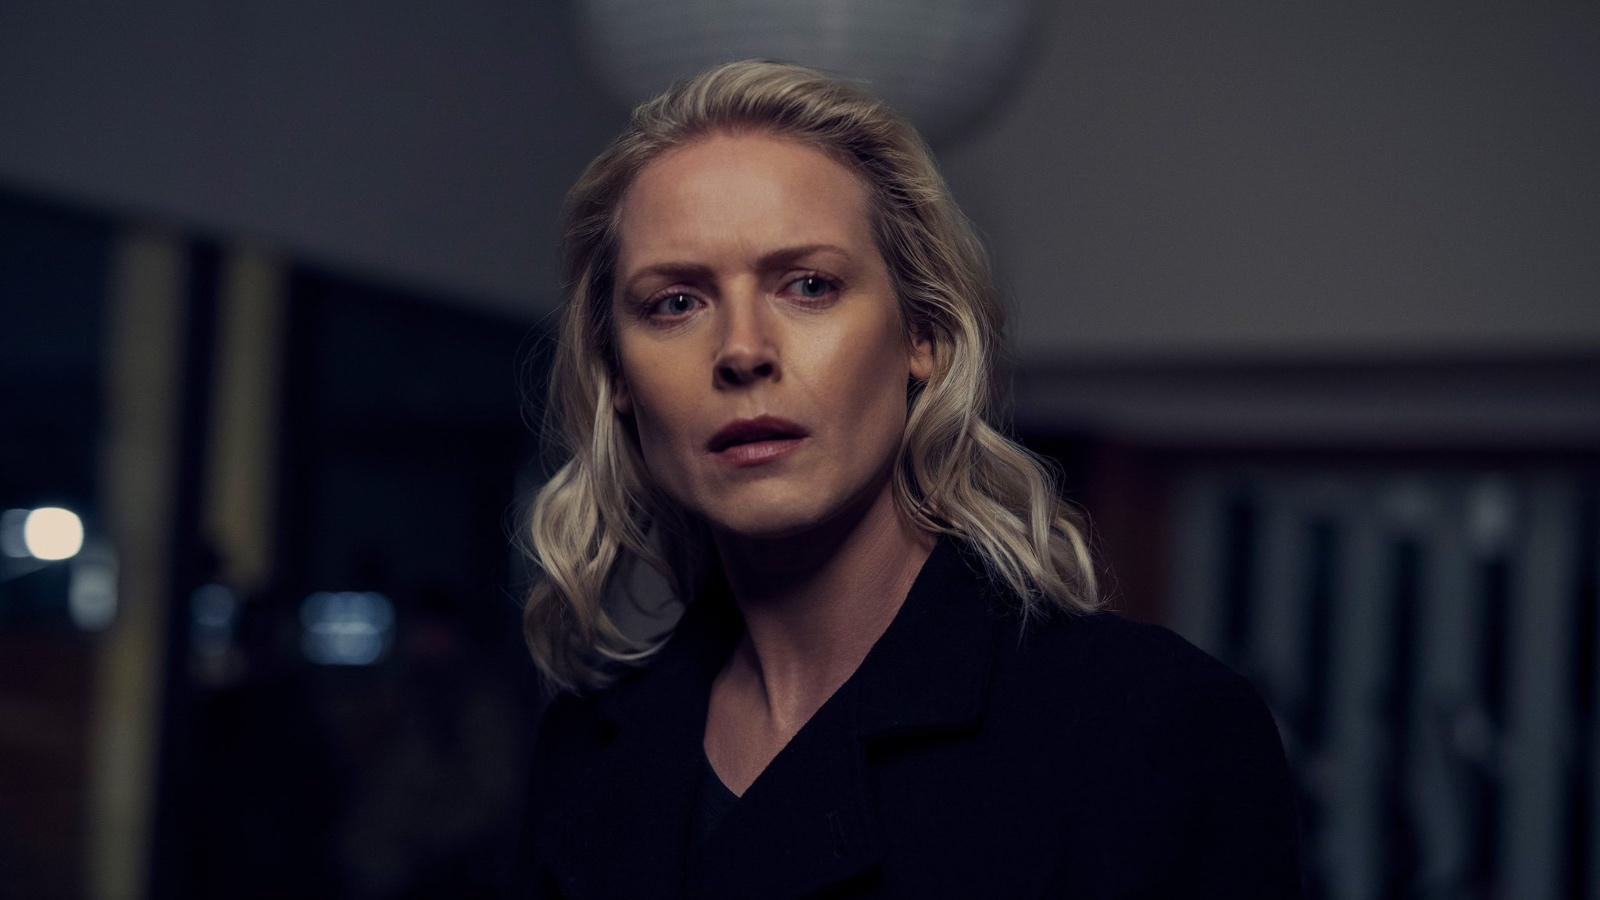 Synnøve Macody Lund as Cecilia Pederson in Saw X